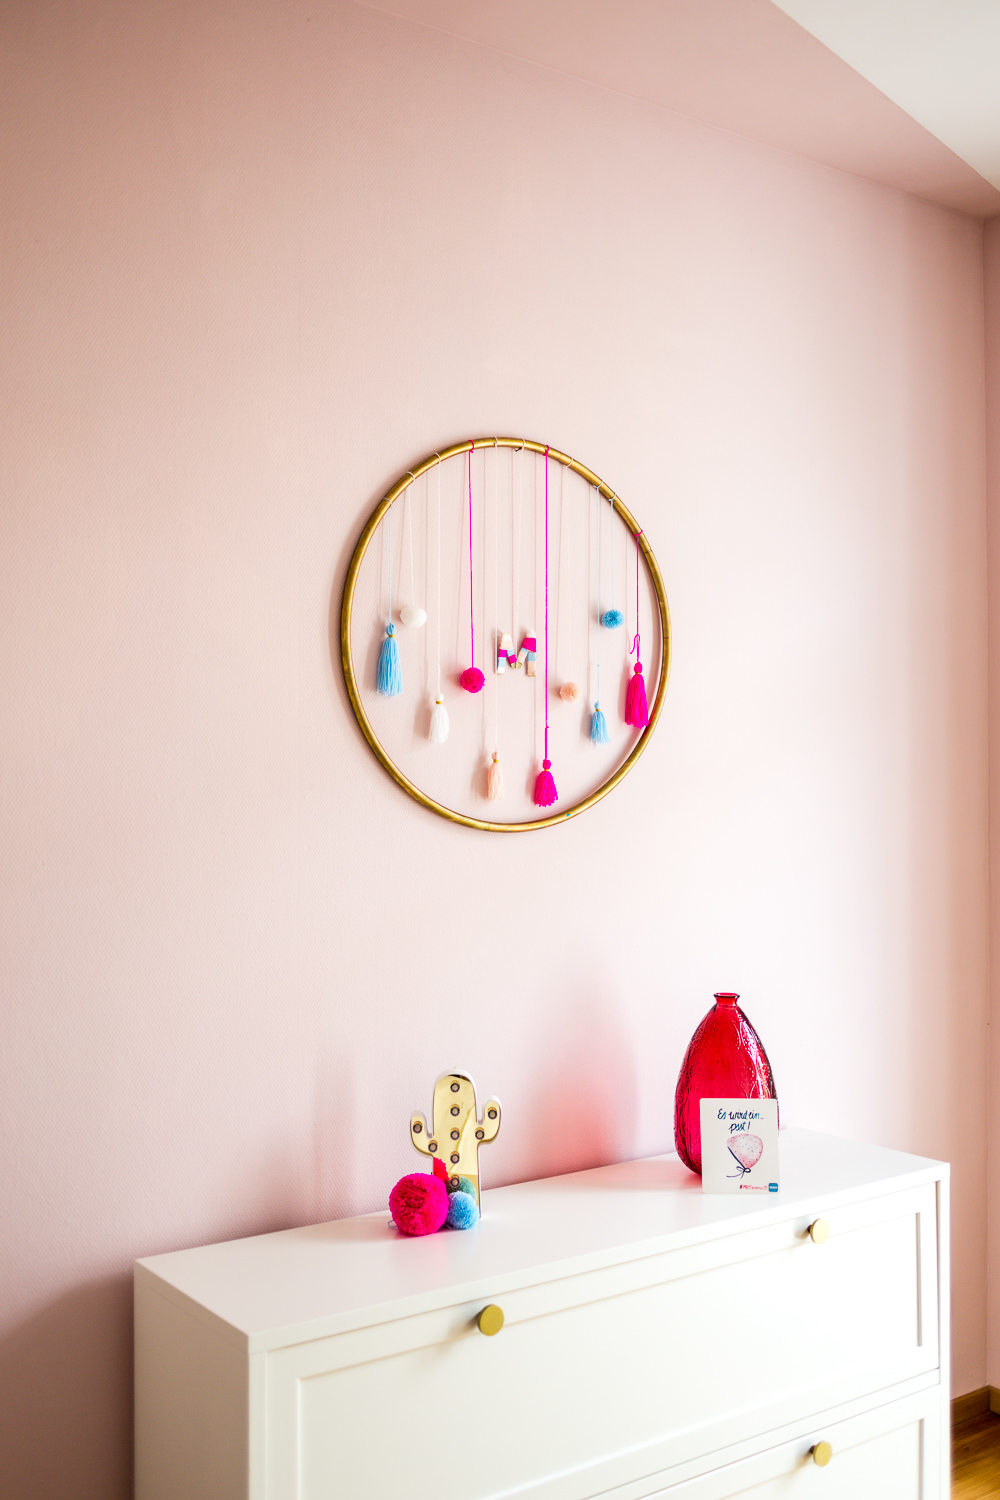 Schöner Wohnen Farbe Architects Finest Test Lingotto Rosa Kinderzimmer DIY Hula Hoop Quasten Pom Poms